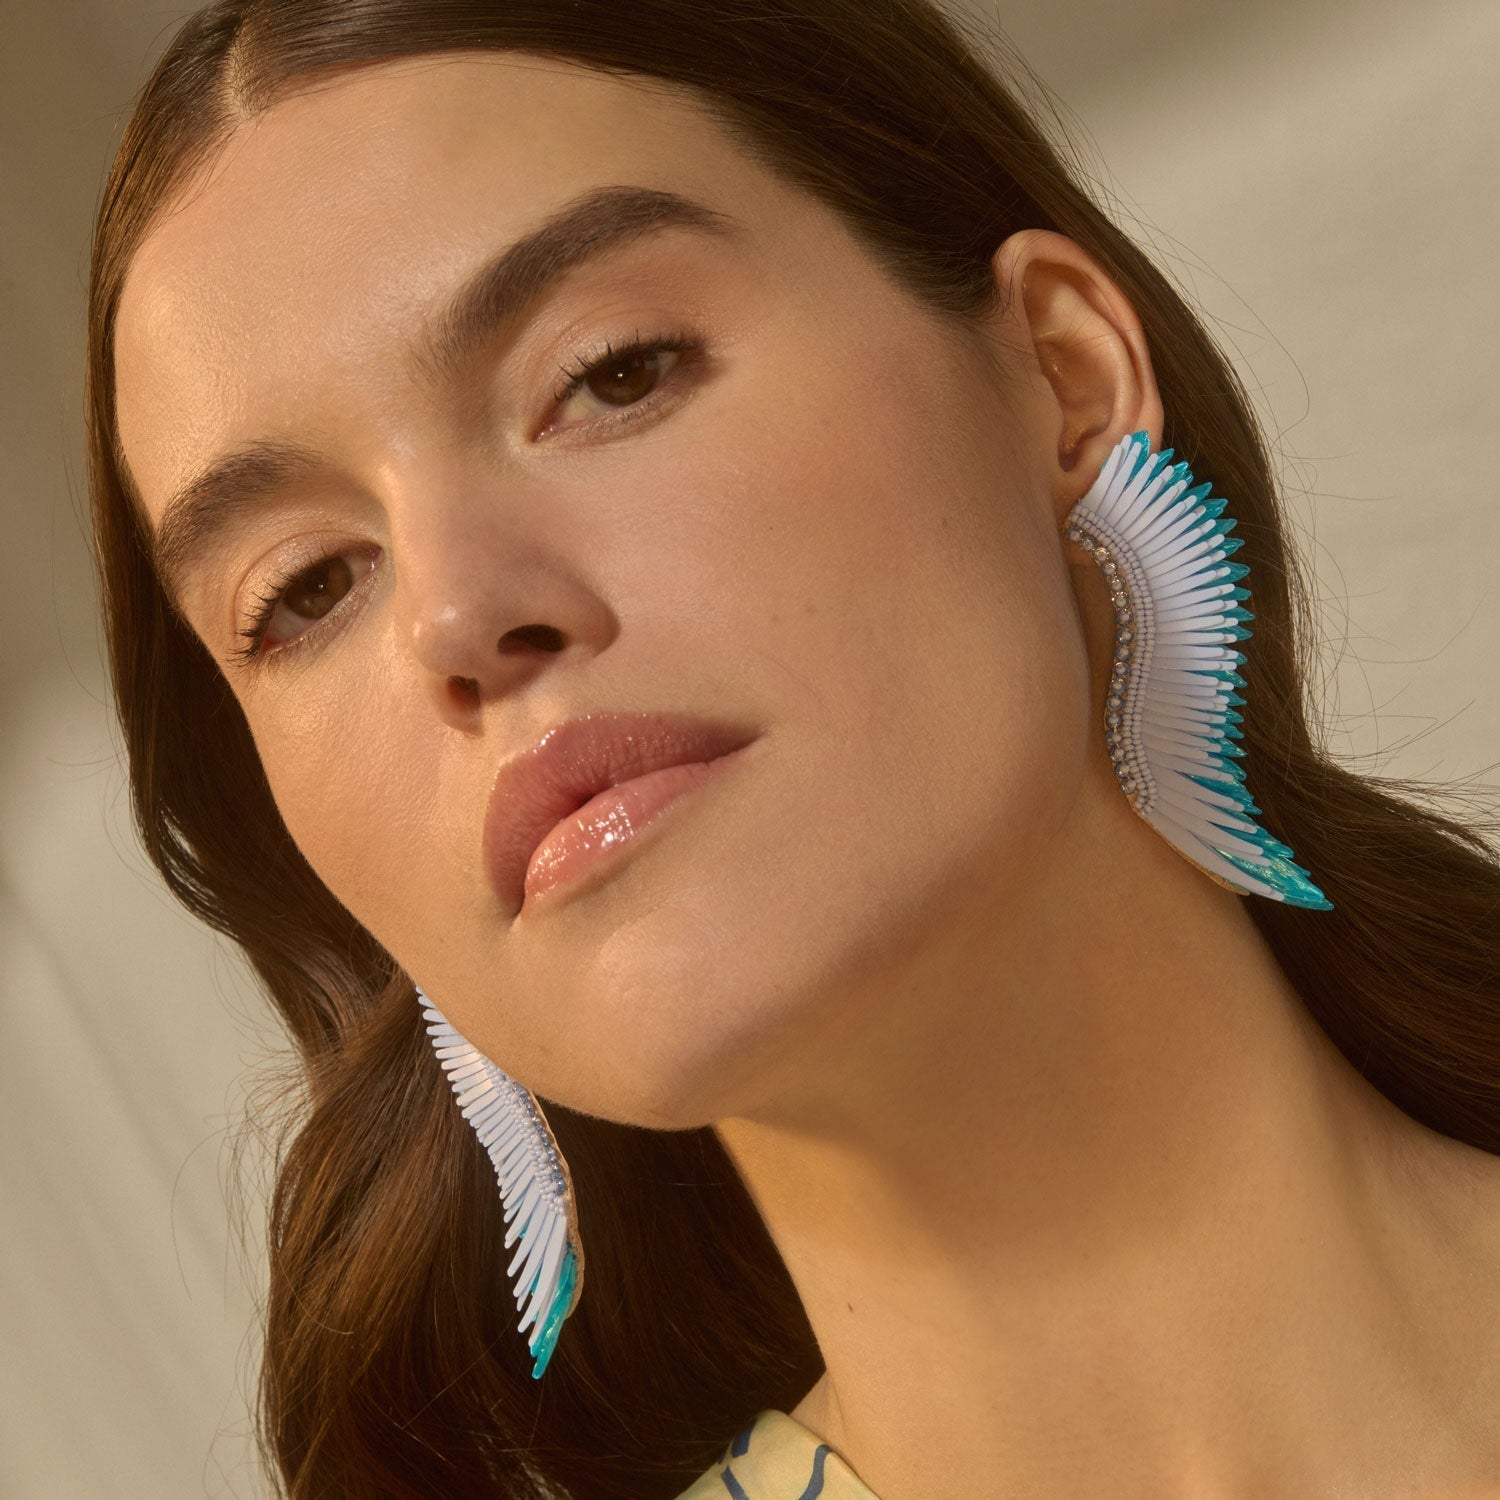 Raffia Madeline Earrings by Mignonne Gavigan